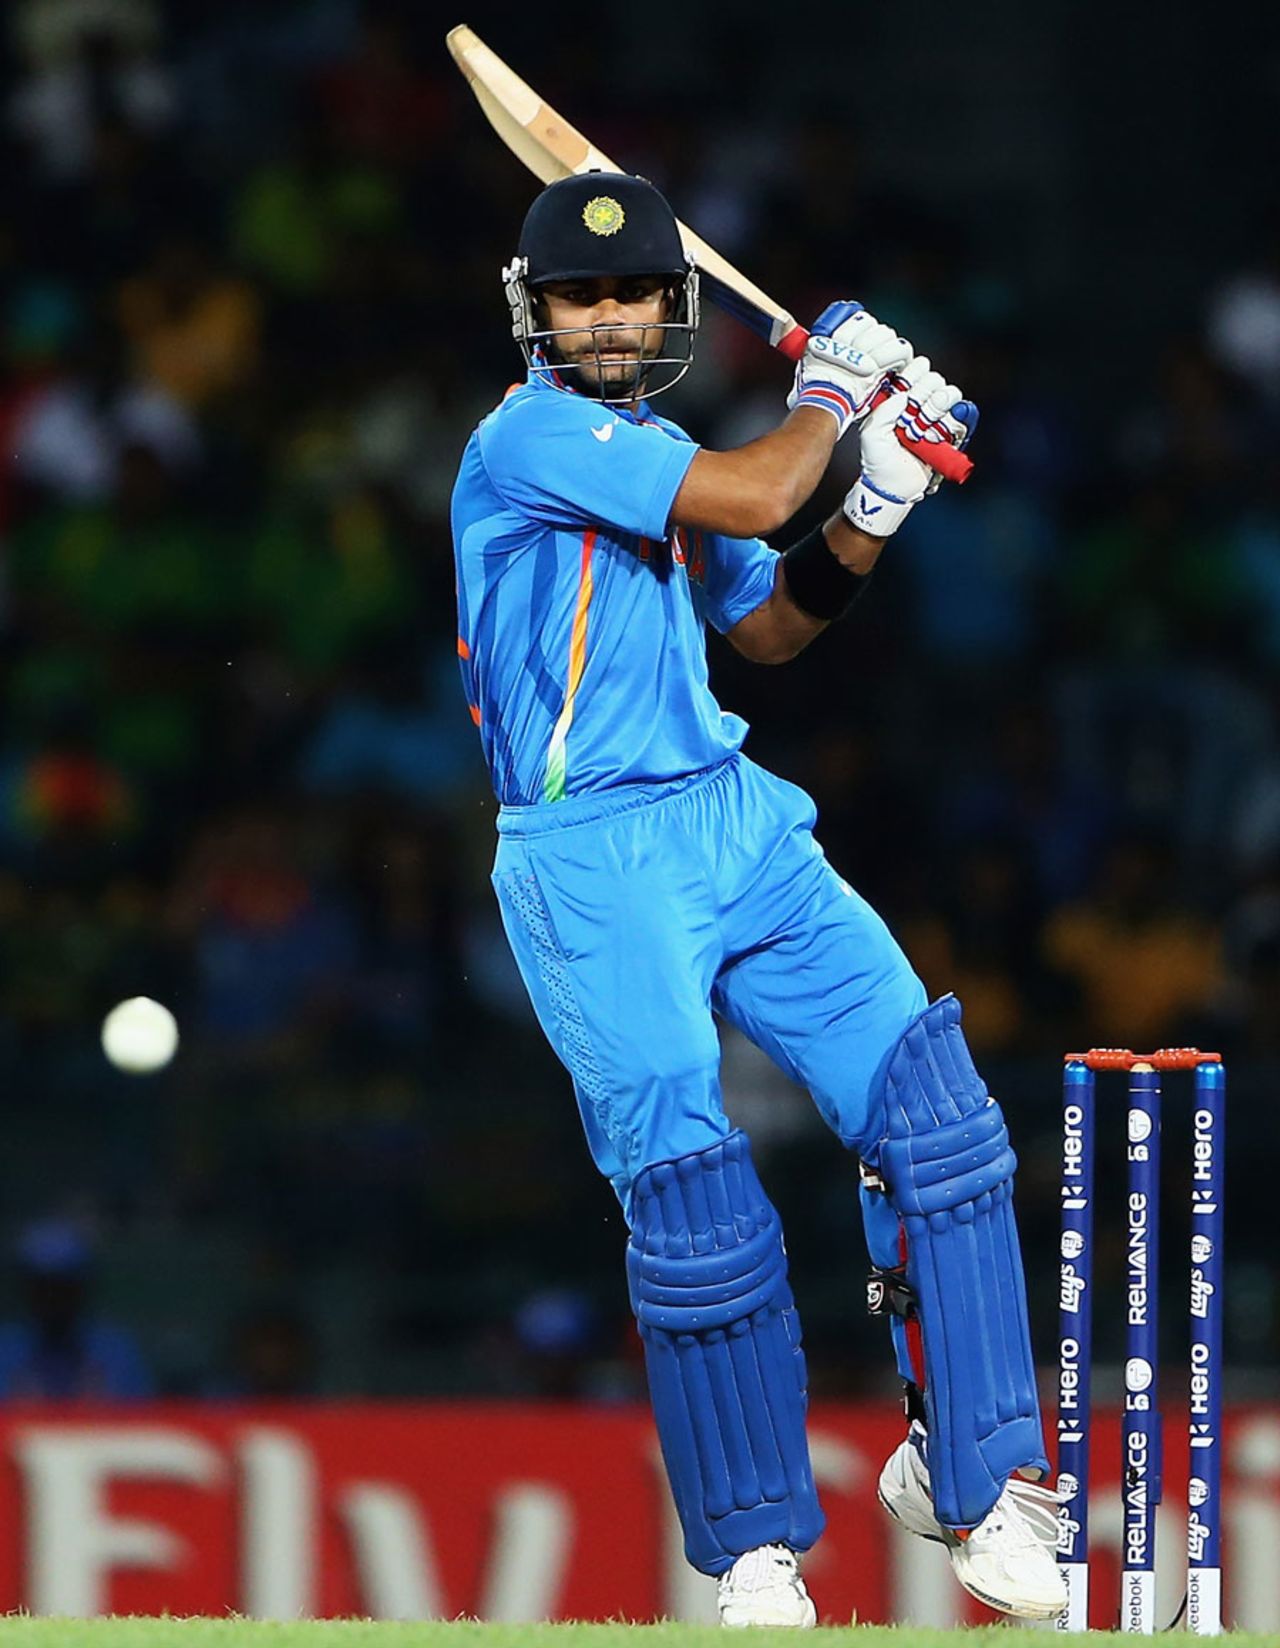 Virat Kohli struck two boundaries but fell for 15, Australia v India, World T20 2012, Colombo, September, 28, 2012